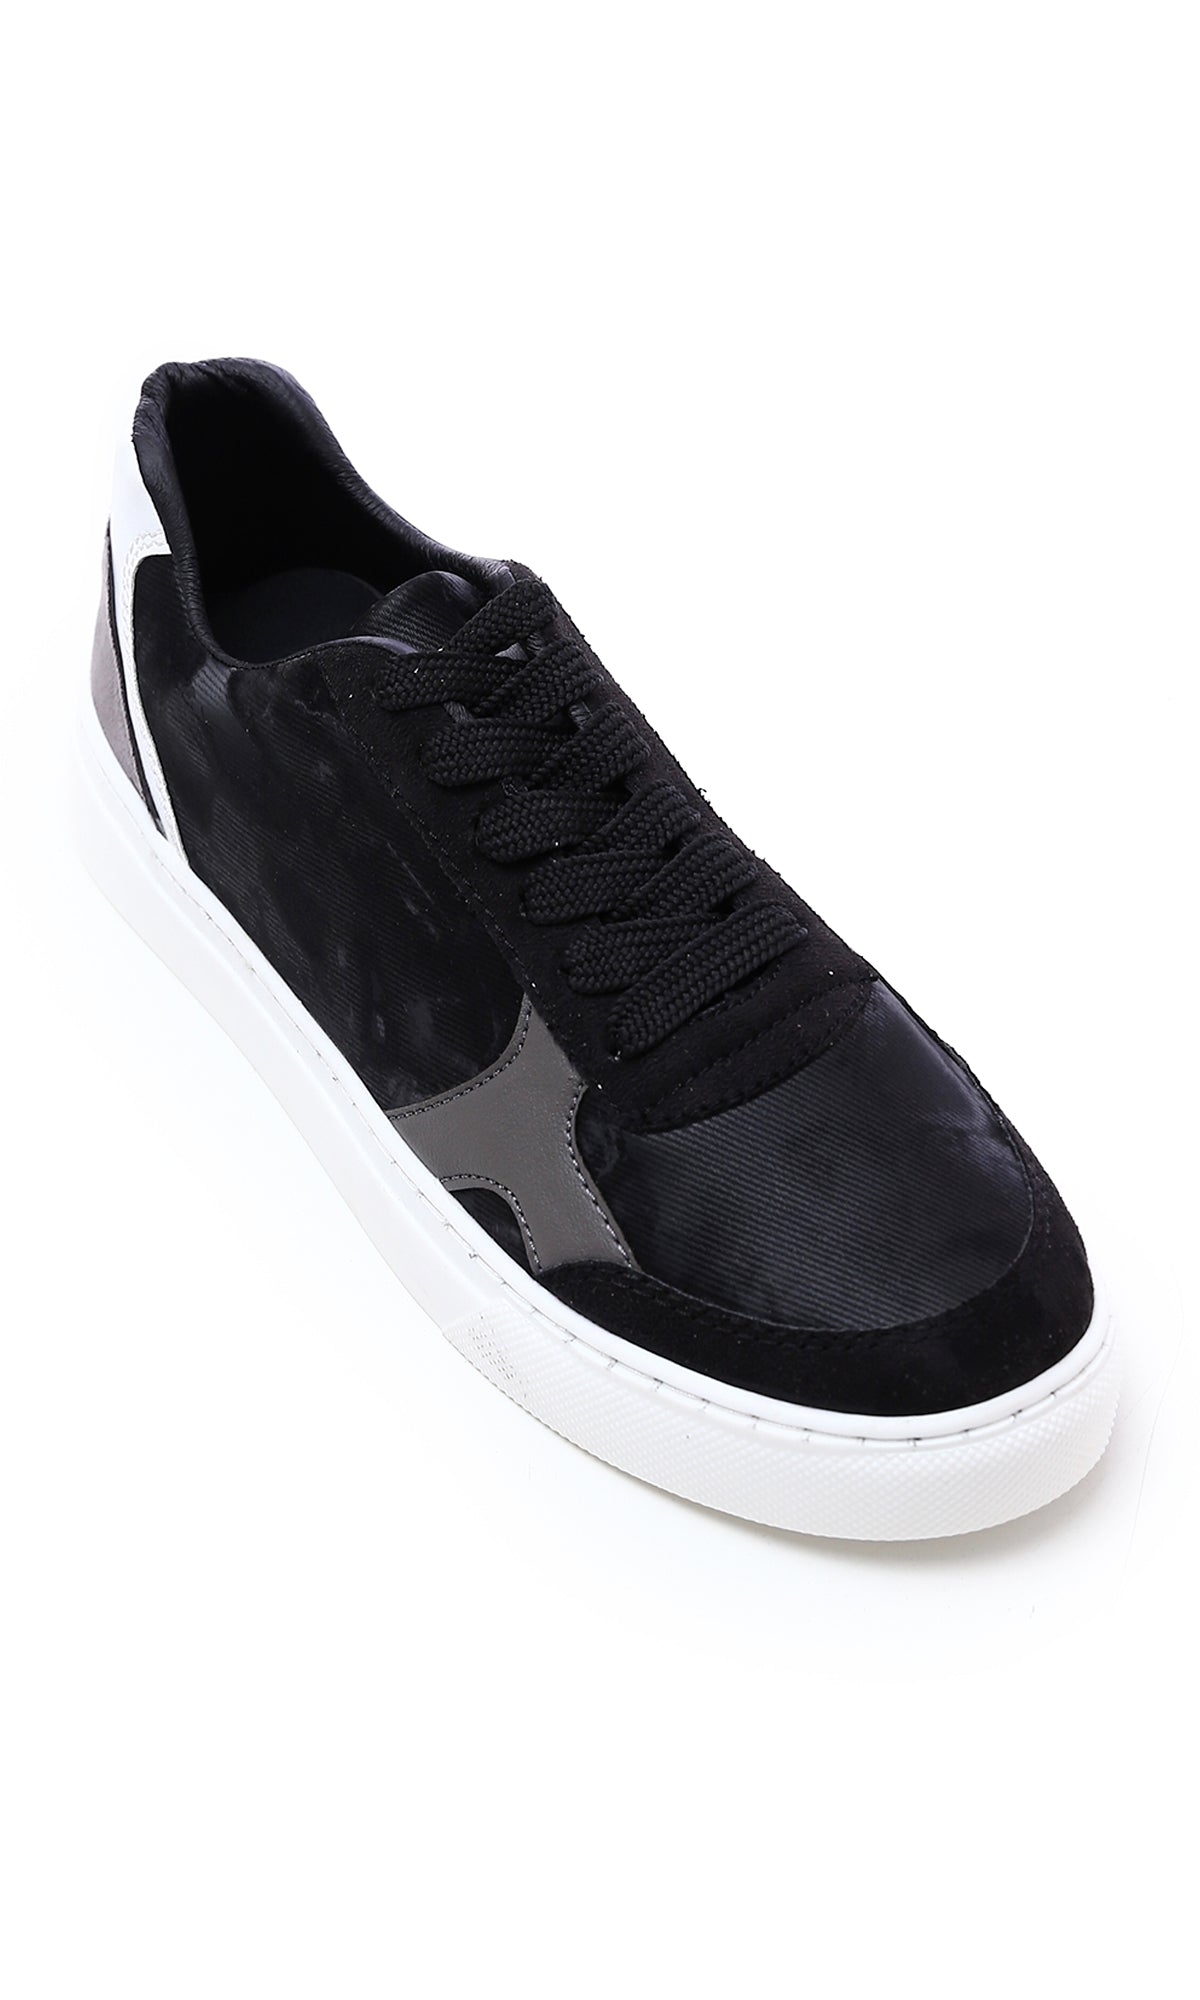 O176362 Tri-Tone Round Toecap Suede Sneakers - Black, White & Grey